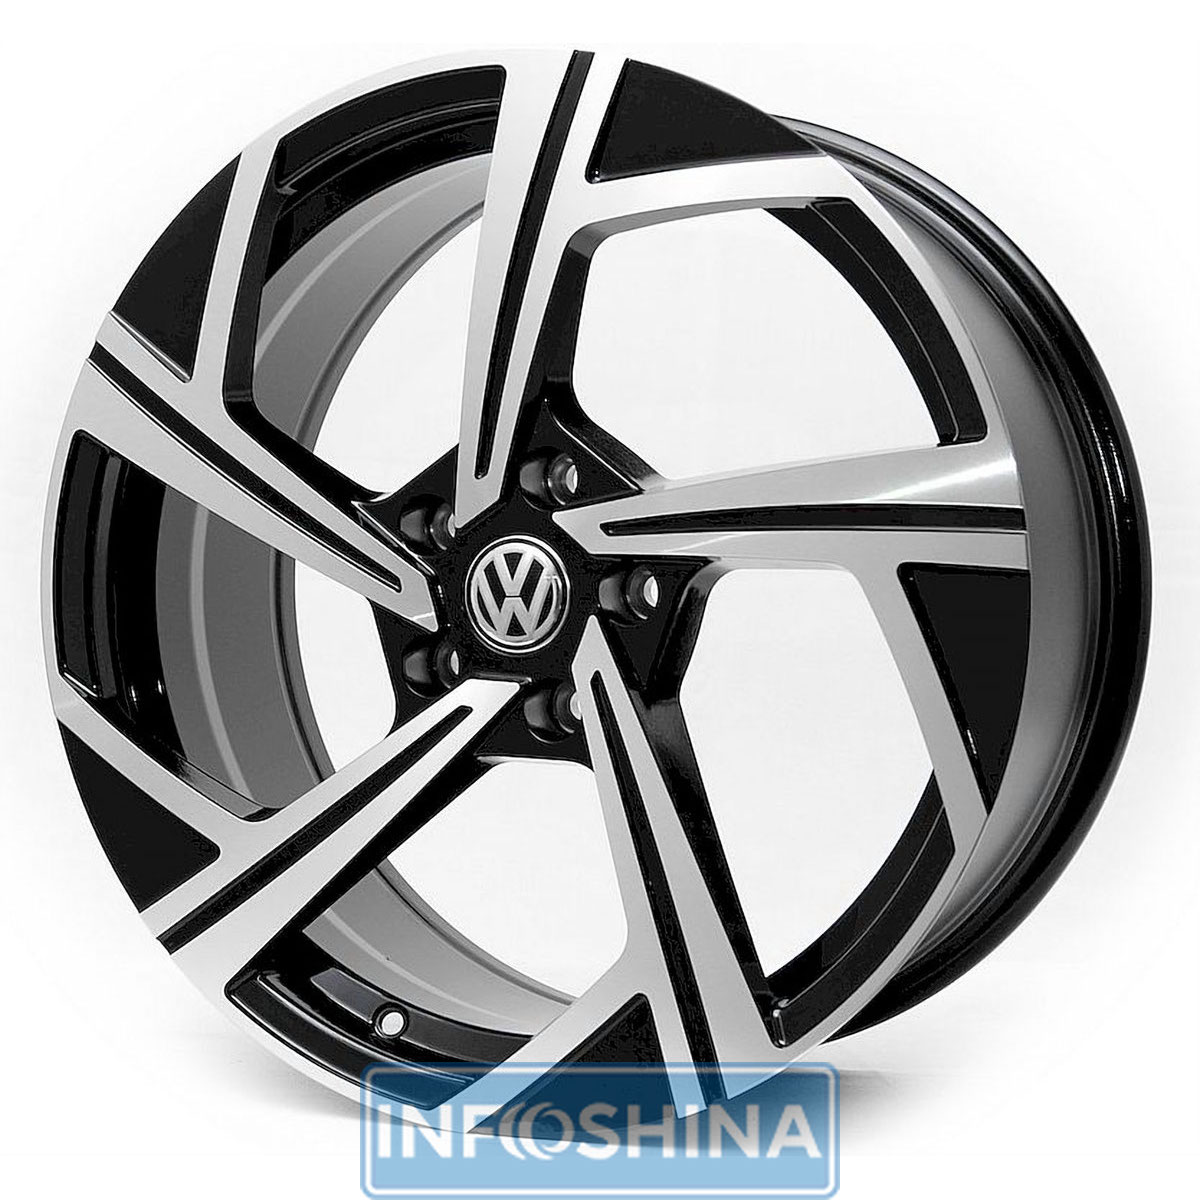 Купити диски Replica Volkswagen 1502 BMF R18 W8 PCD5x112 ET42 DIA57.1